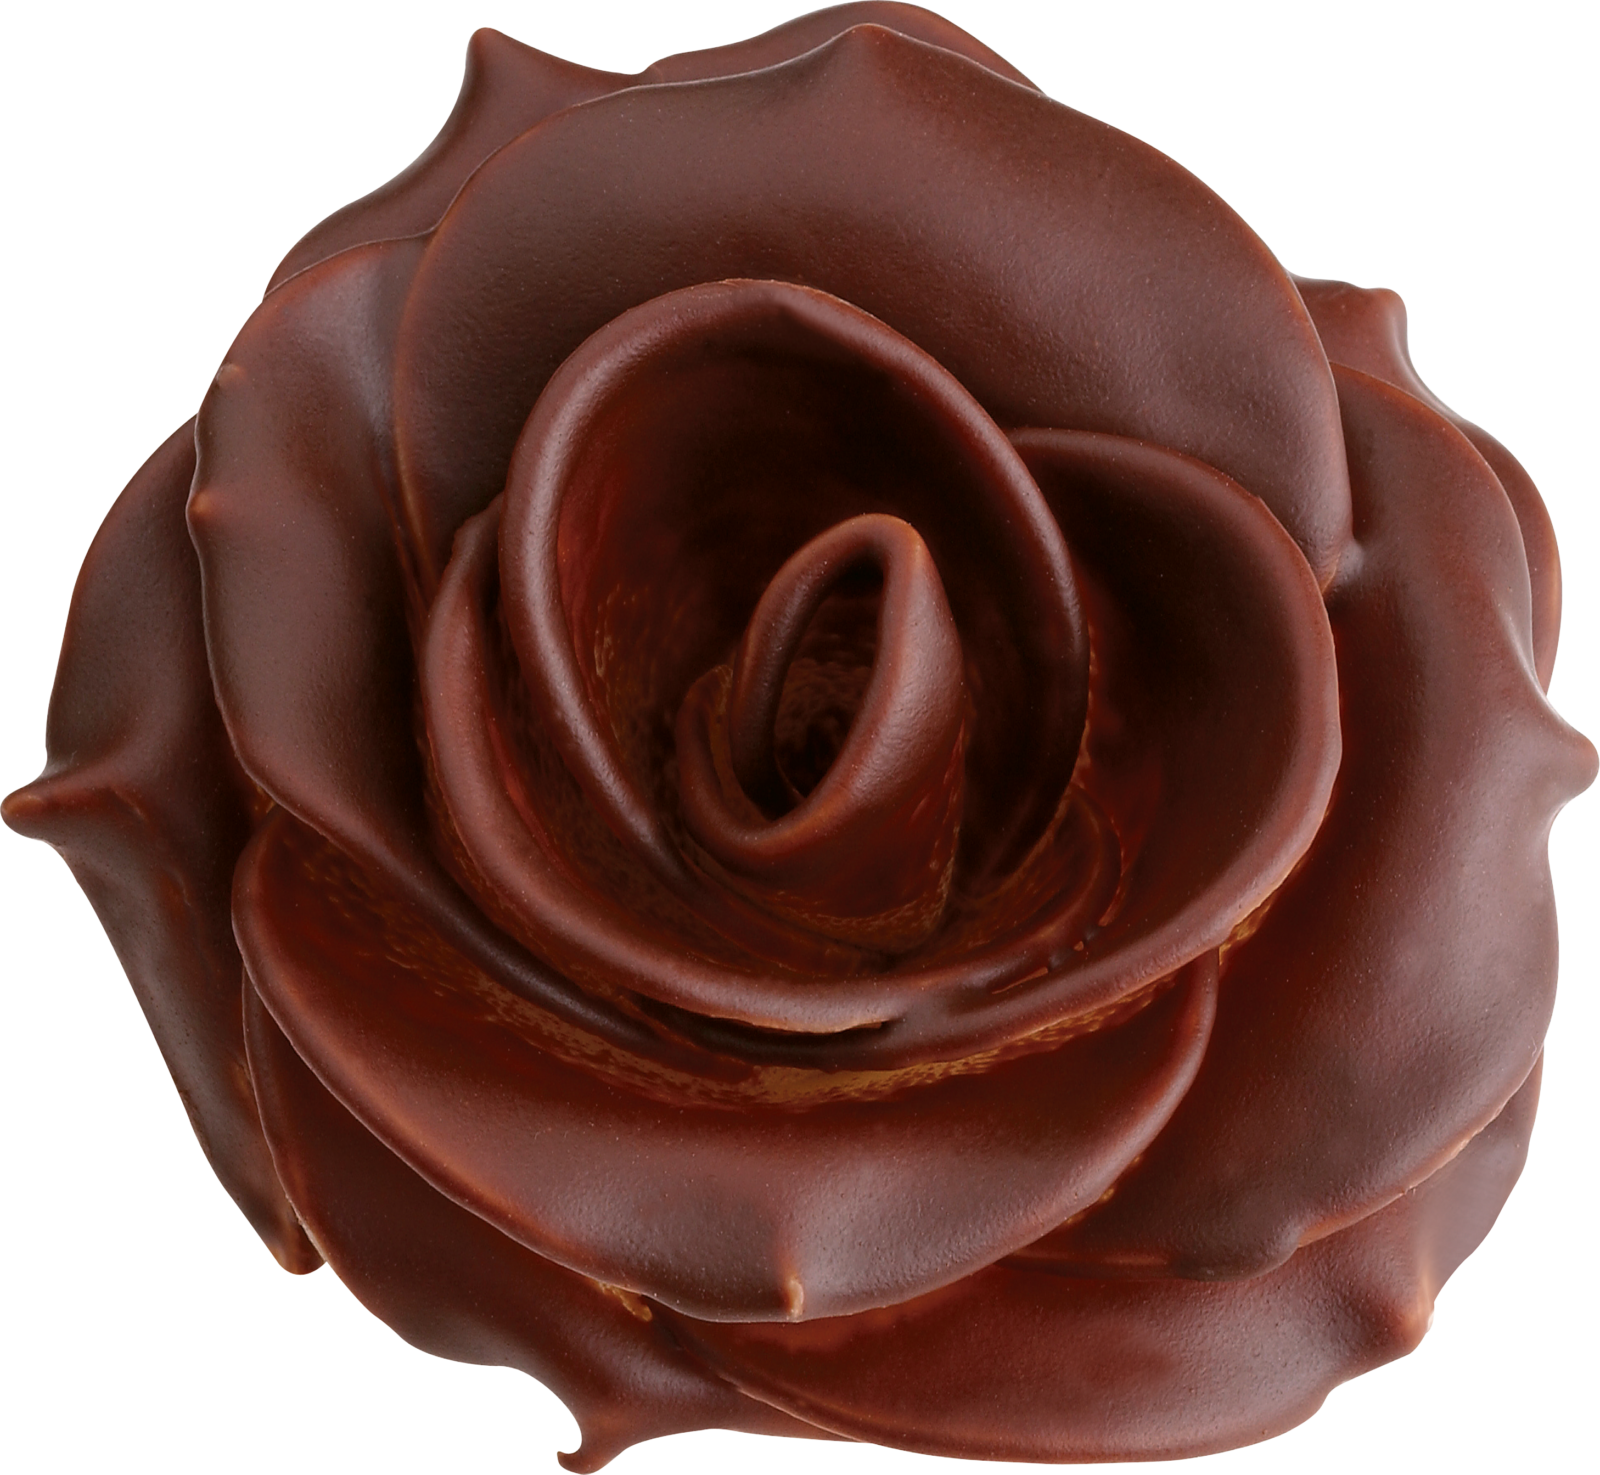 chokolate-rose-anymenu